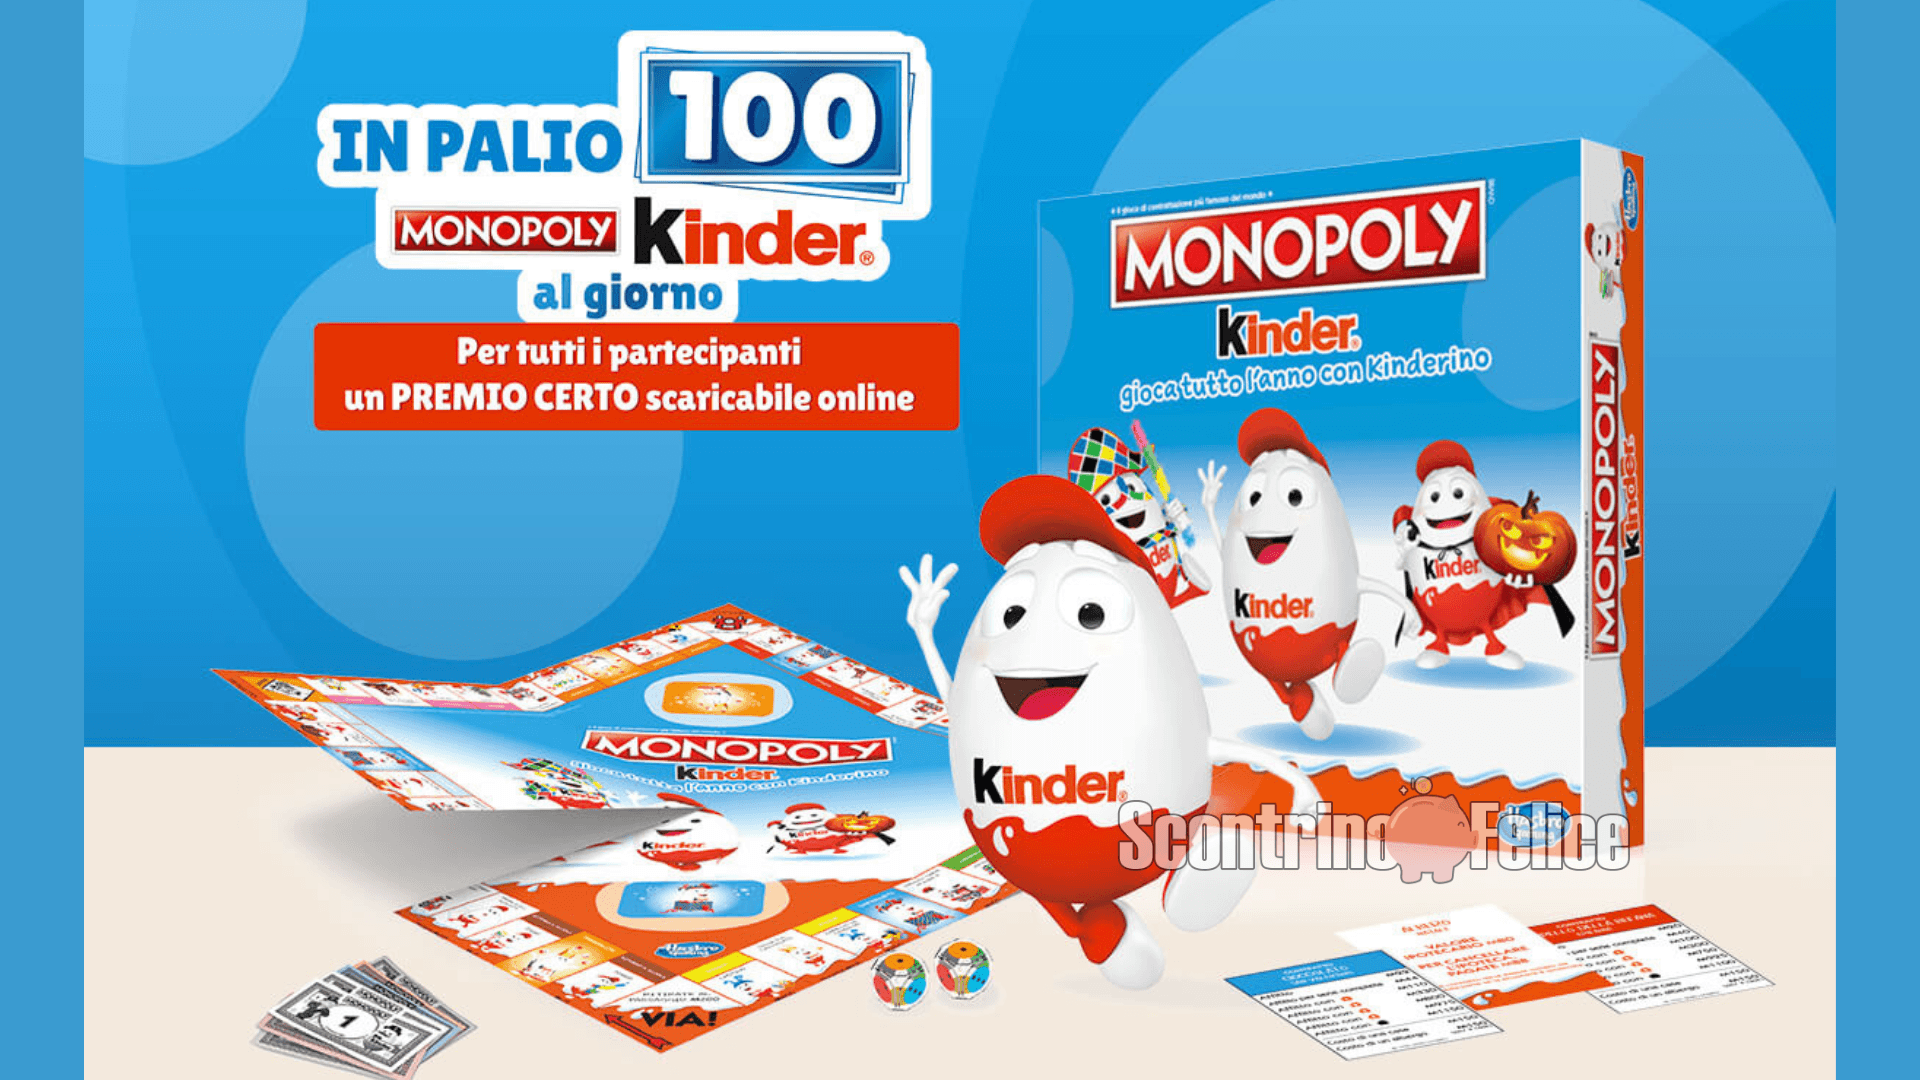 Concorso Kinder: in palio 100 Monopoly ogni giorno! 1